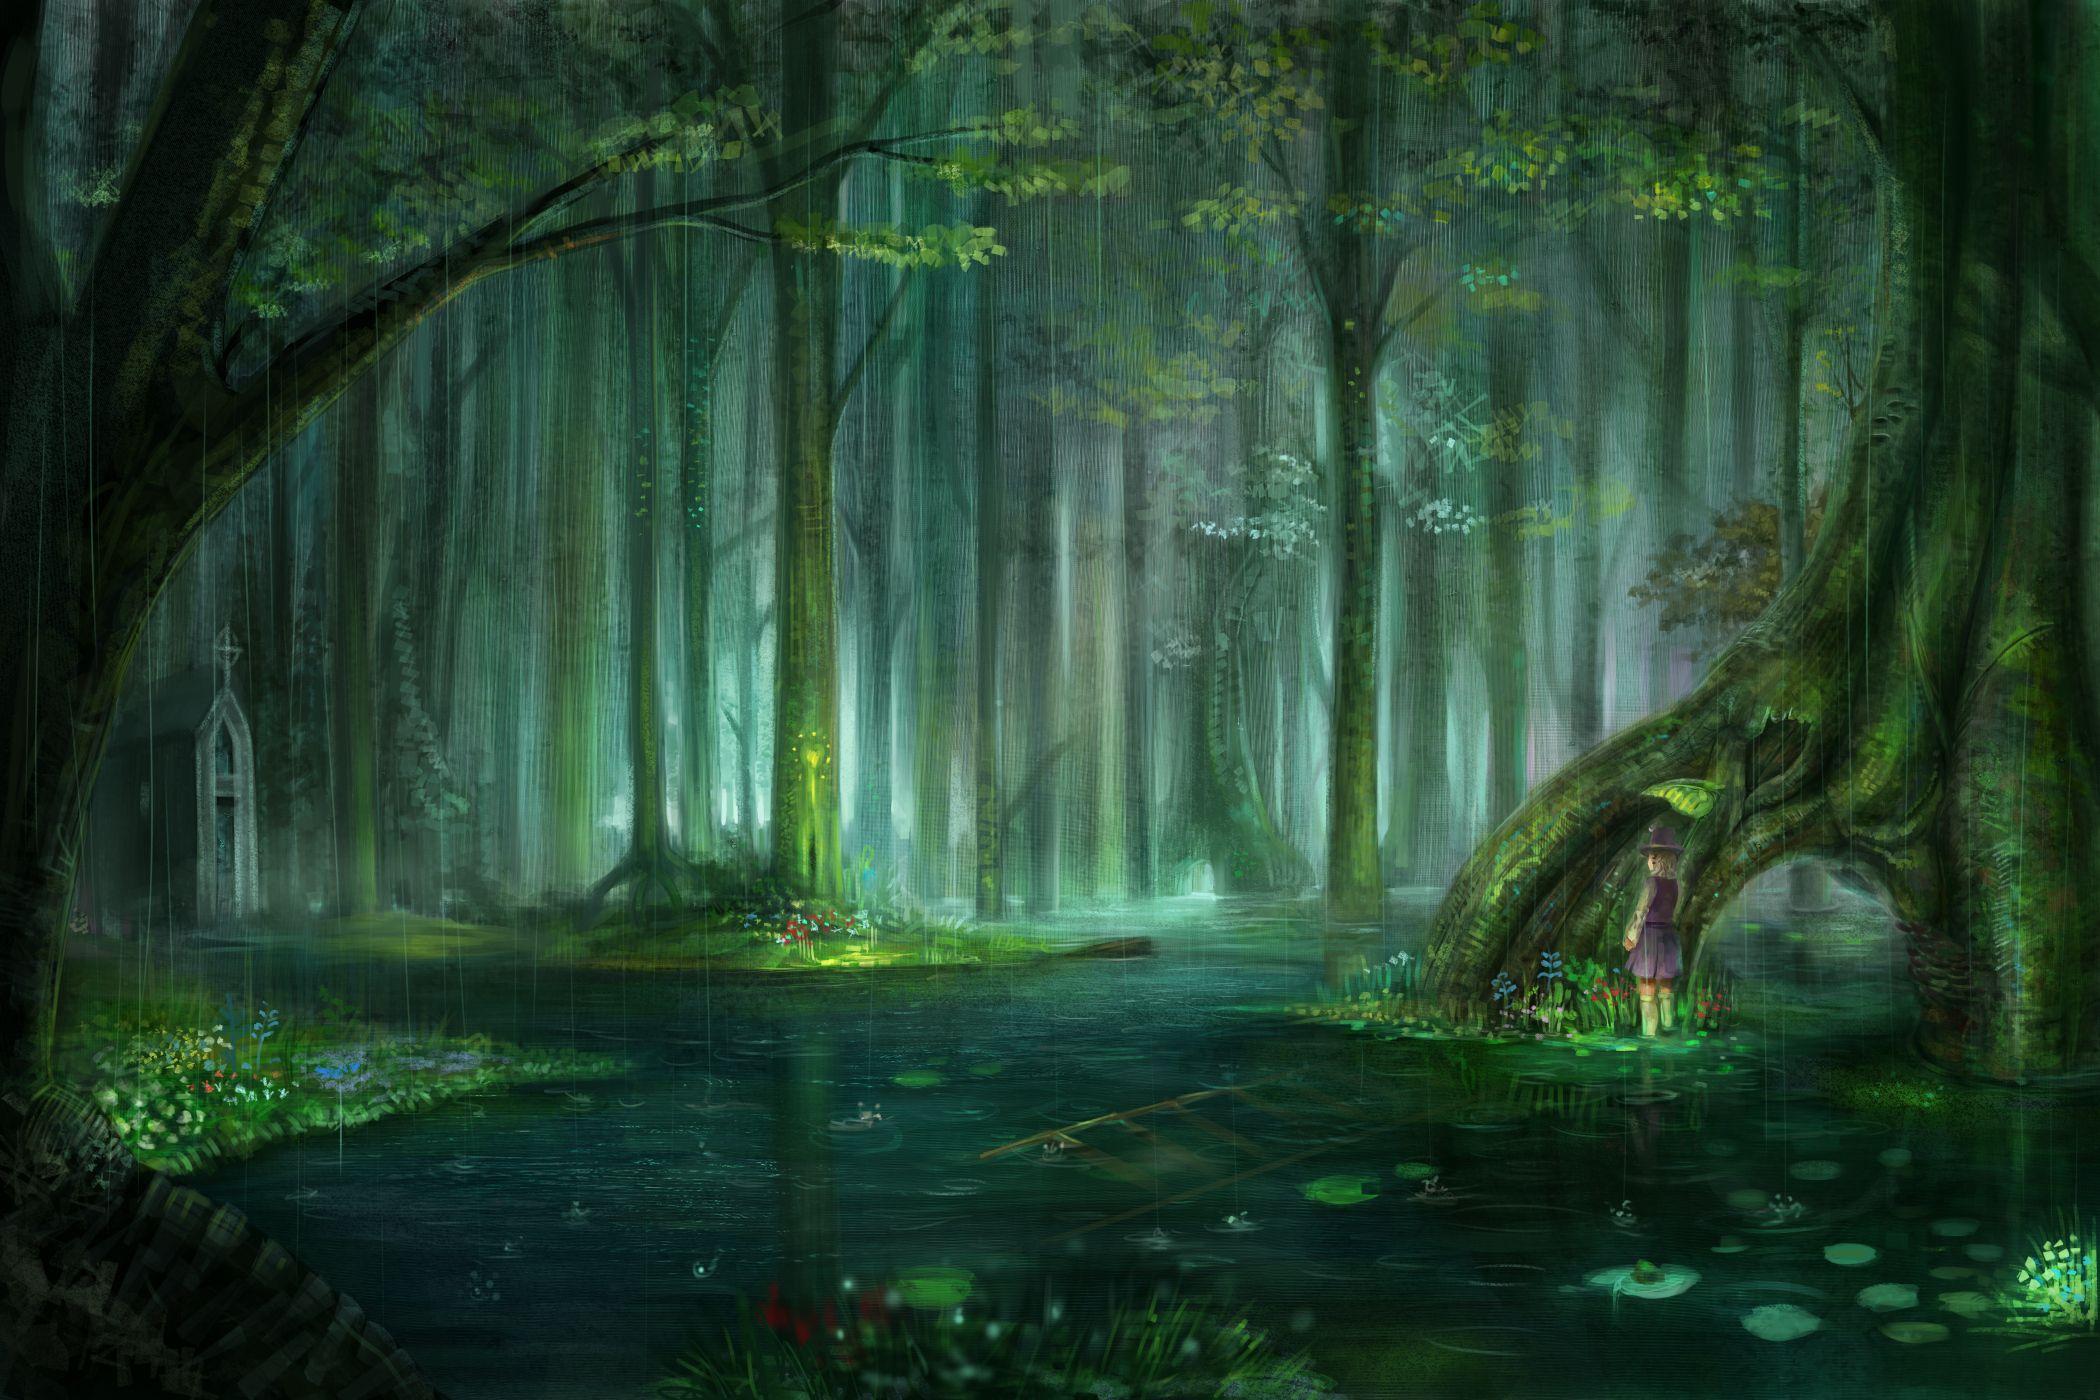 Hình nền anime rừng - Mê hoặc bởi cảnh quan ảo diệu và nét vẽ độc đáo của anime rừng trong hình nền đẹp mắt này. Hãy lạc vào thế giới trong mơ của những thợ săn, phù thủy và các sinh vật kỳ lạ, và tận hưởng sự bình yên và phép màu của rừng.